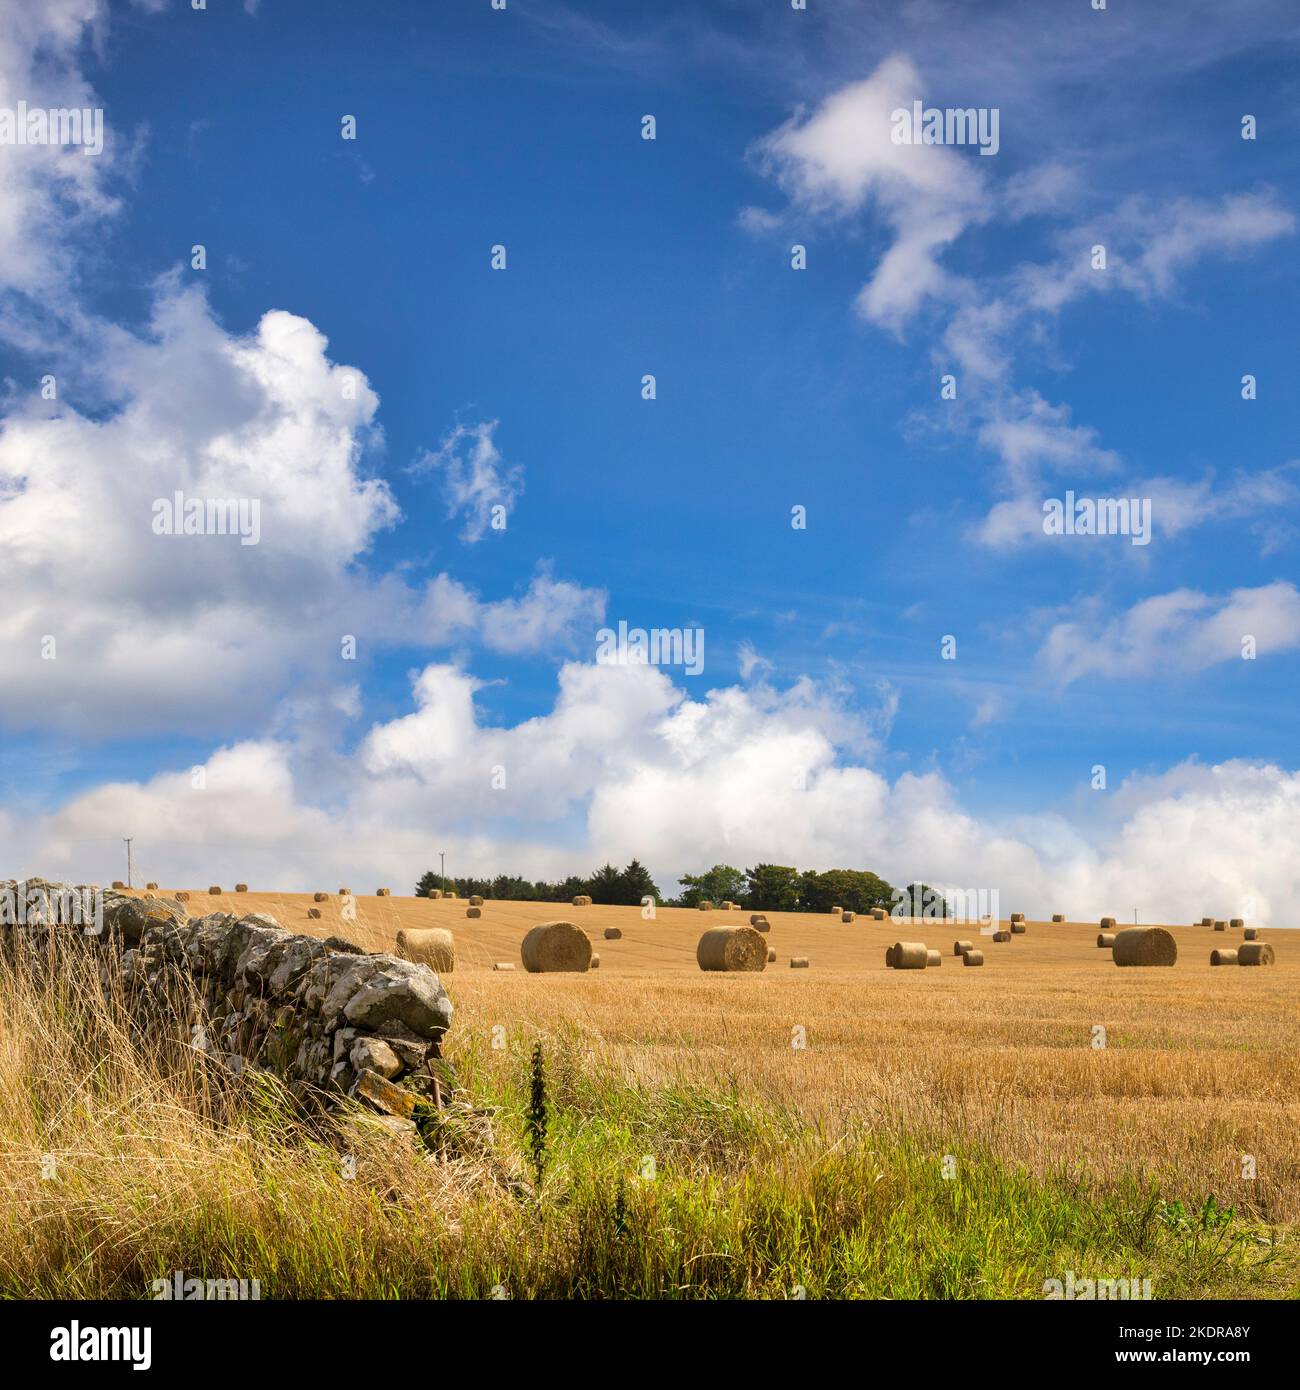 Haybales dispersés dans un champ de chaume de maïs, et un mur de pierre sec, sous un beau ciel bleu d'été, près de Portsoy, Aberdeenshire, Écosse. Mise au point i Banque D'Images